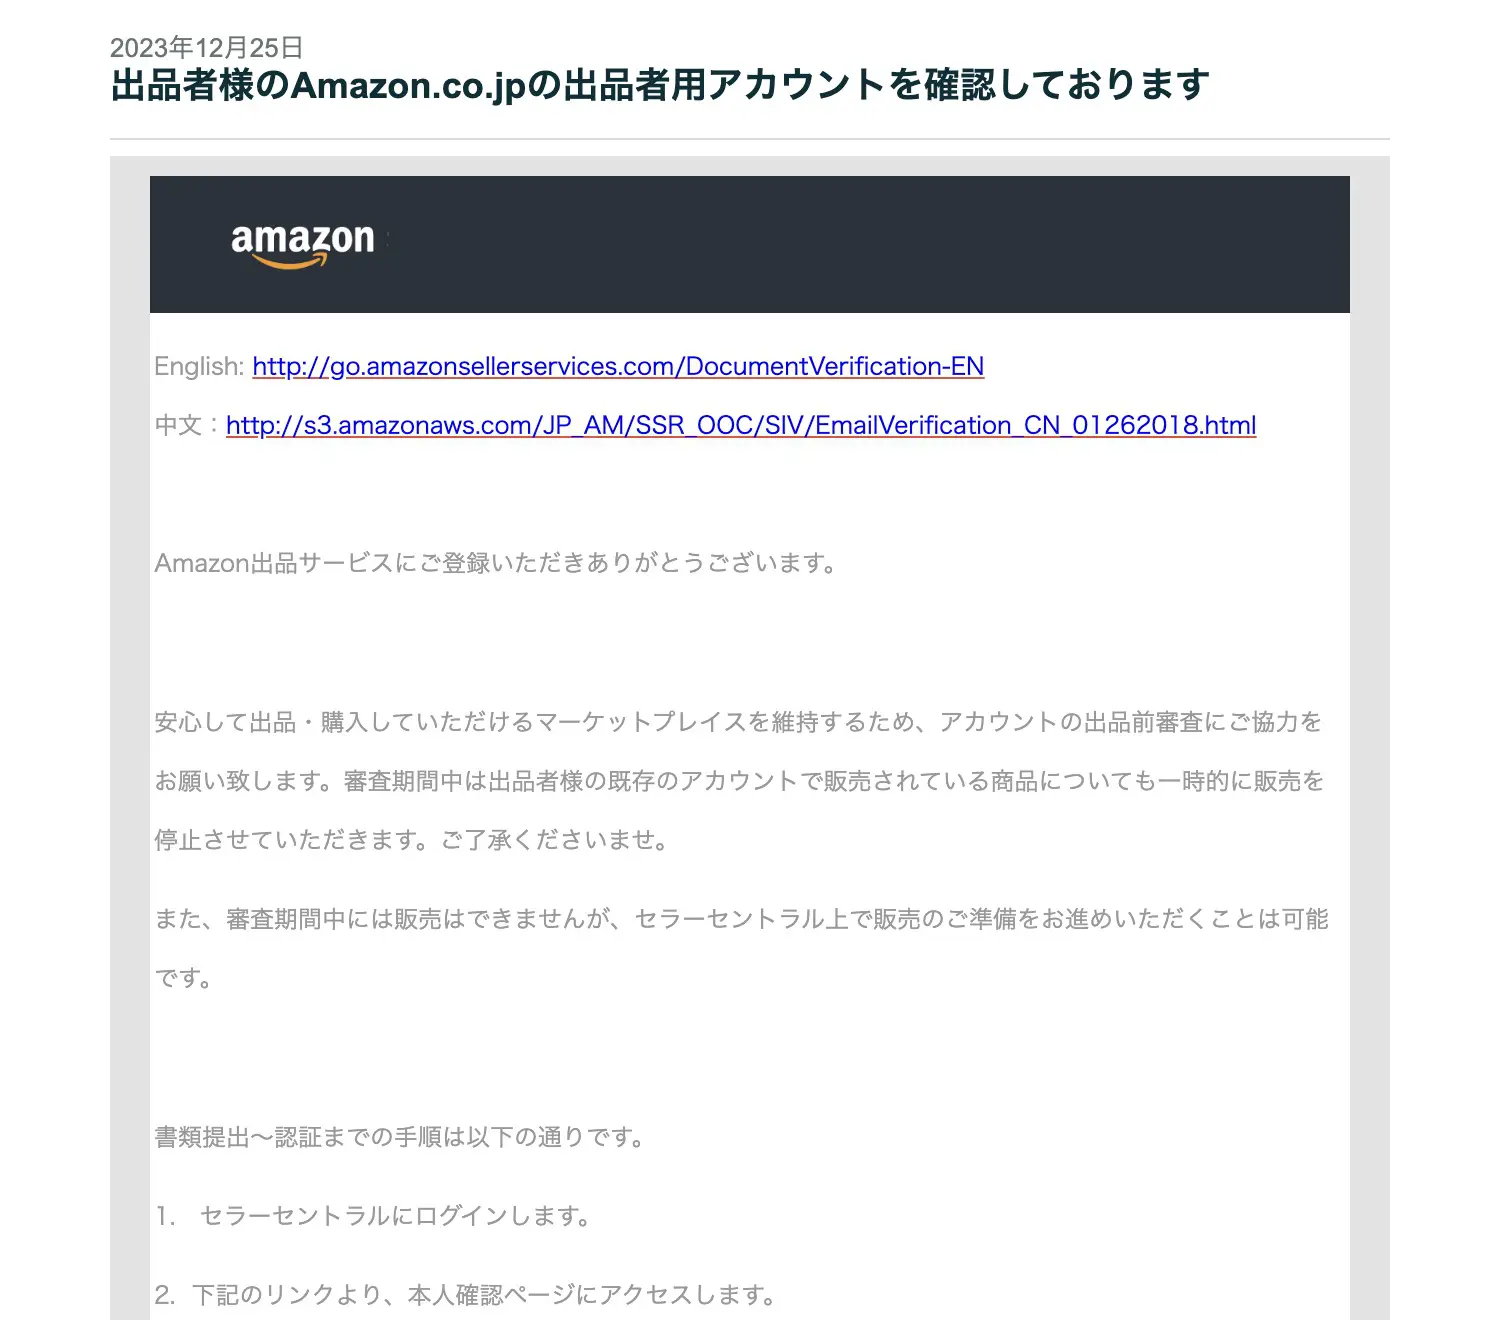 突然届く本人確認メール「Amazon.co.jpの出品者用アカウントを確認して 